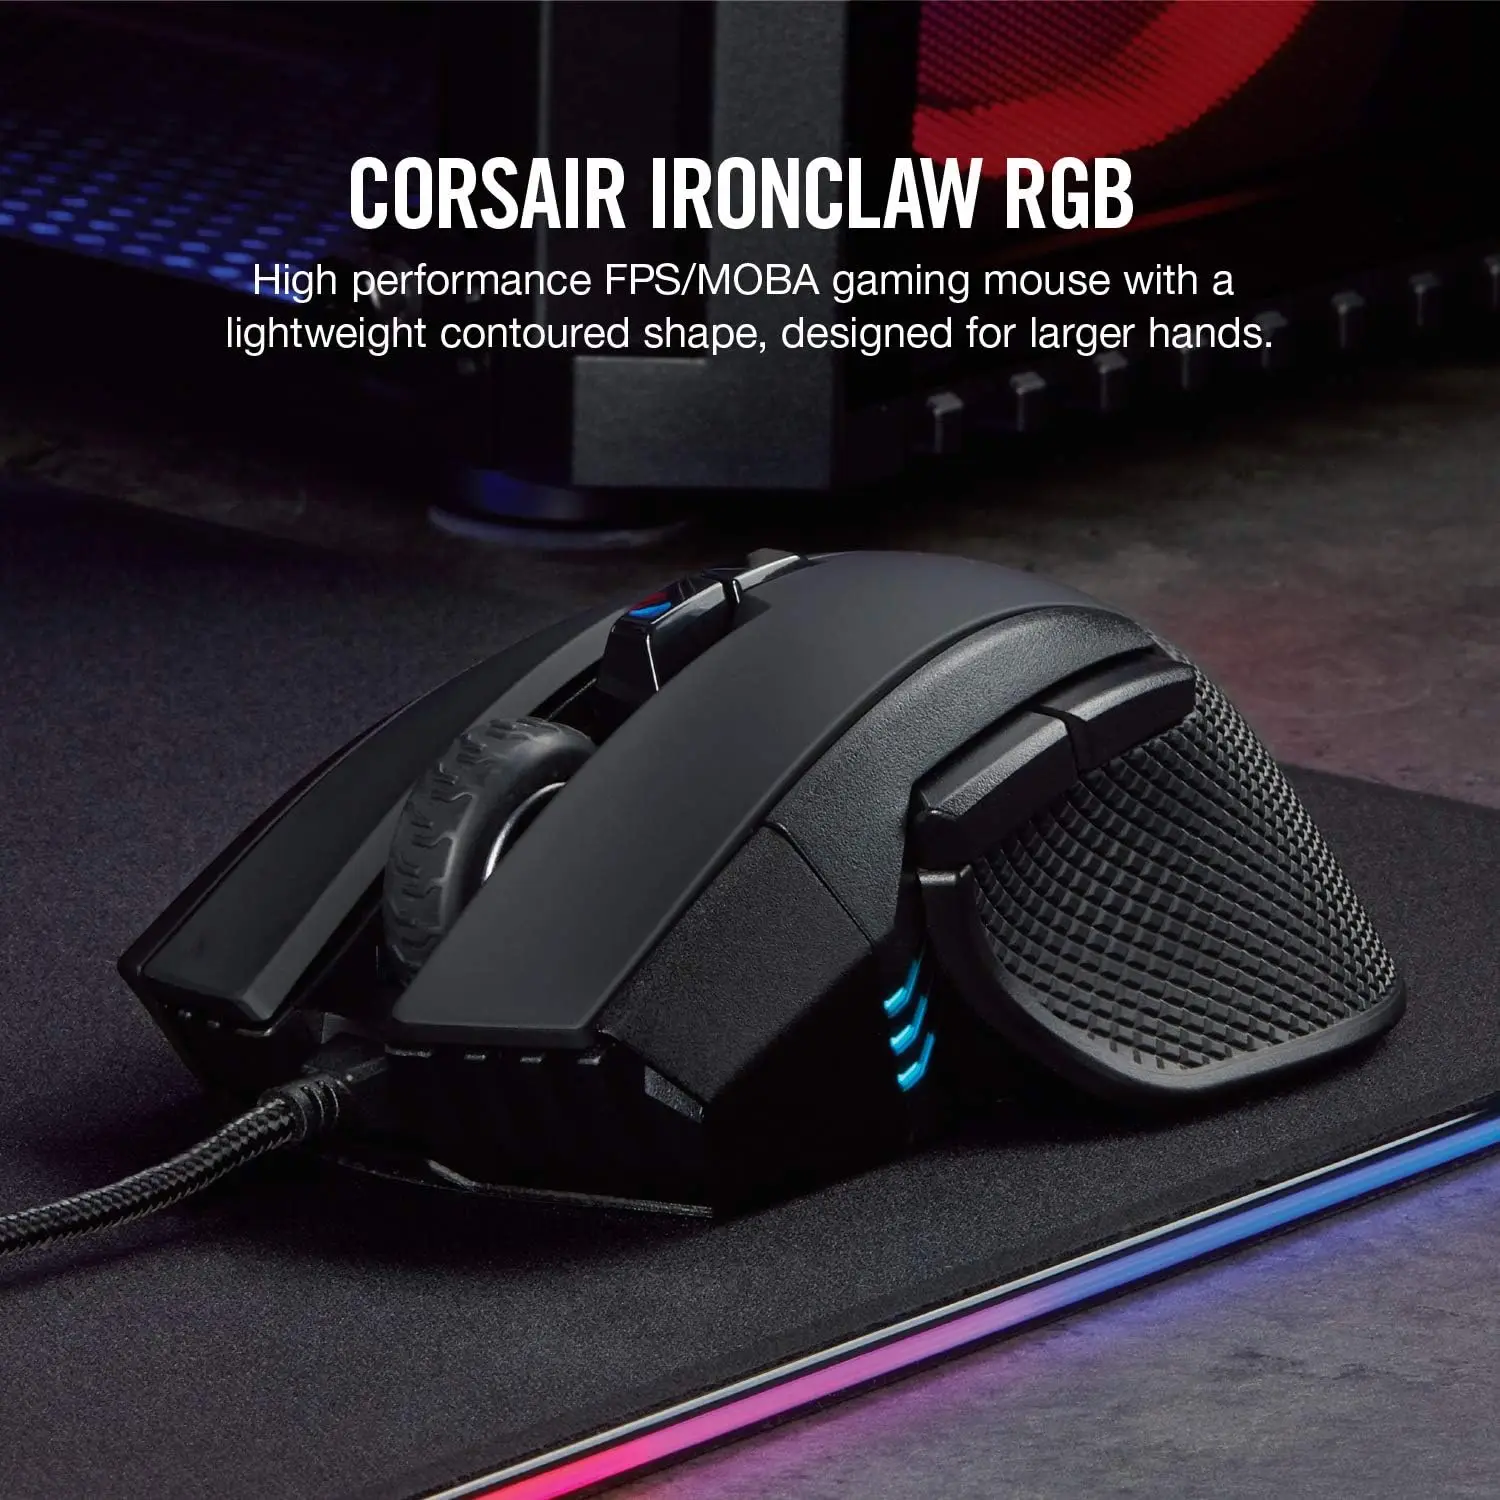 

Игровая мышь Corsair Ironclaw RGB - FPS и MOBA-18,000 DPI оптический датчик-RGB-подсветка, черный цвет